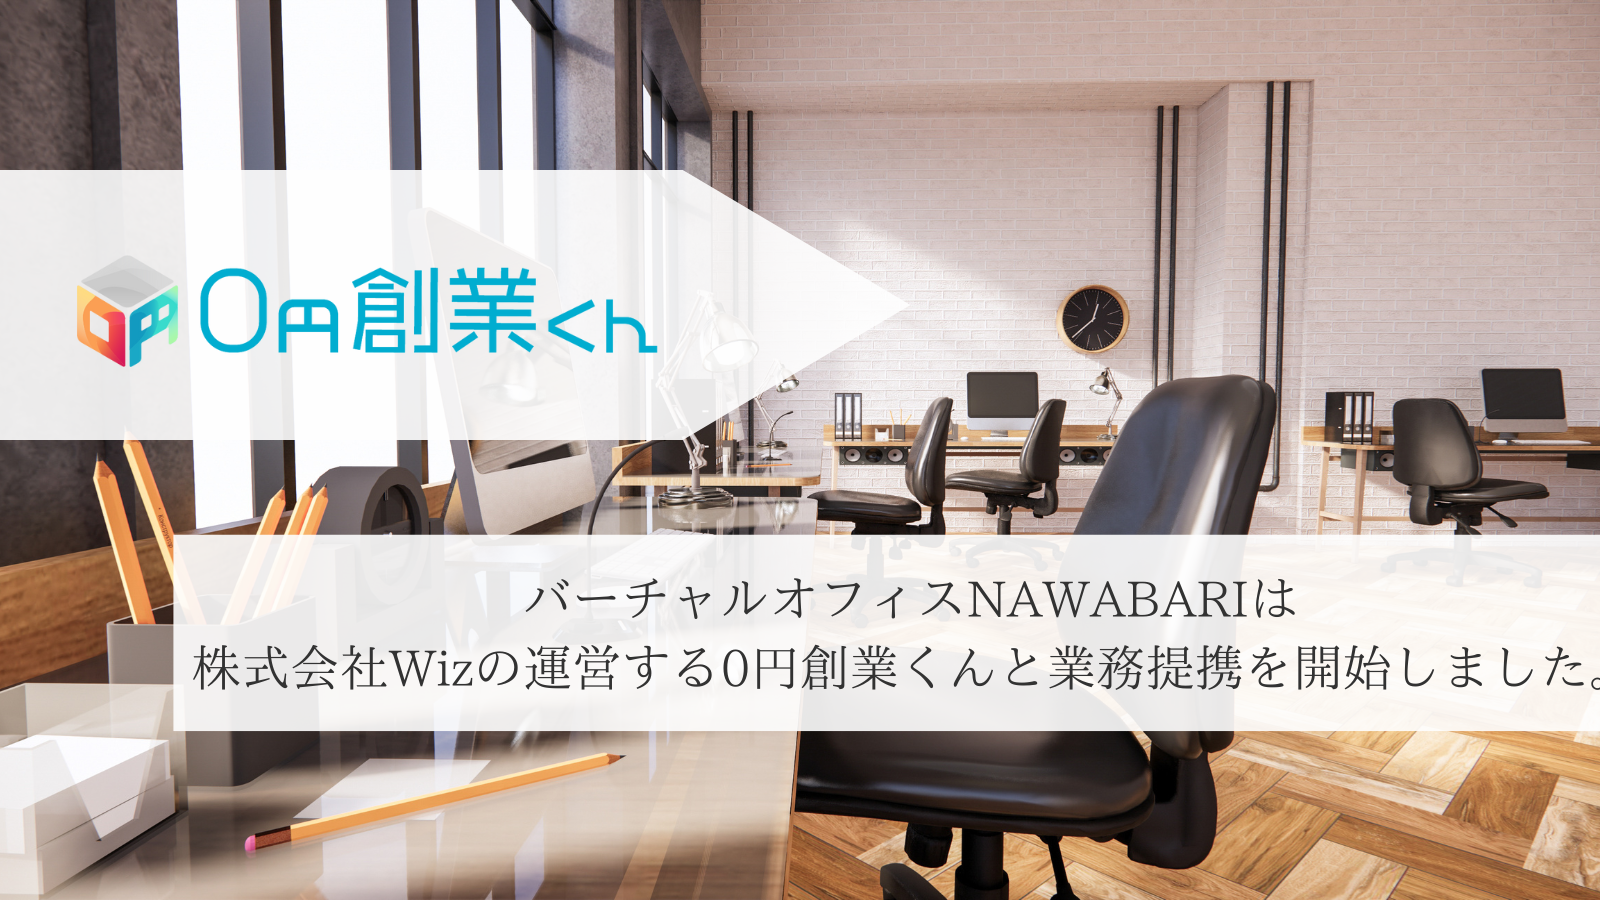 バーチャルオフィスNAWABARIは株式会社Wizの運営する「0円創業くん」と提携を開始しました。